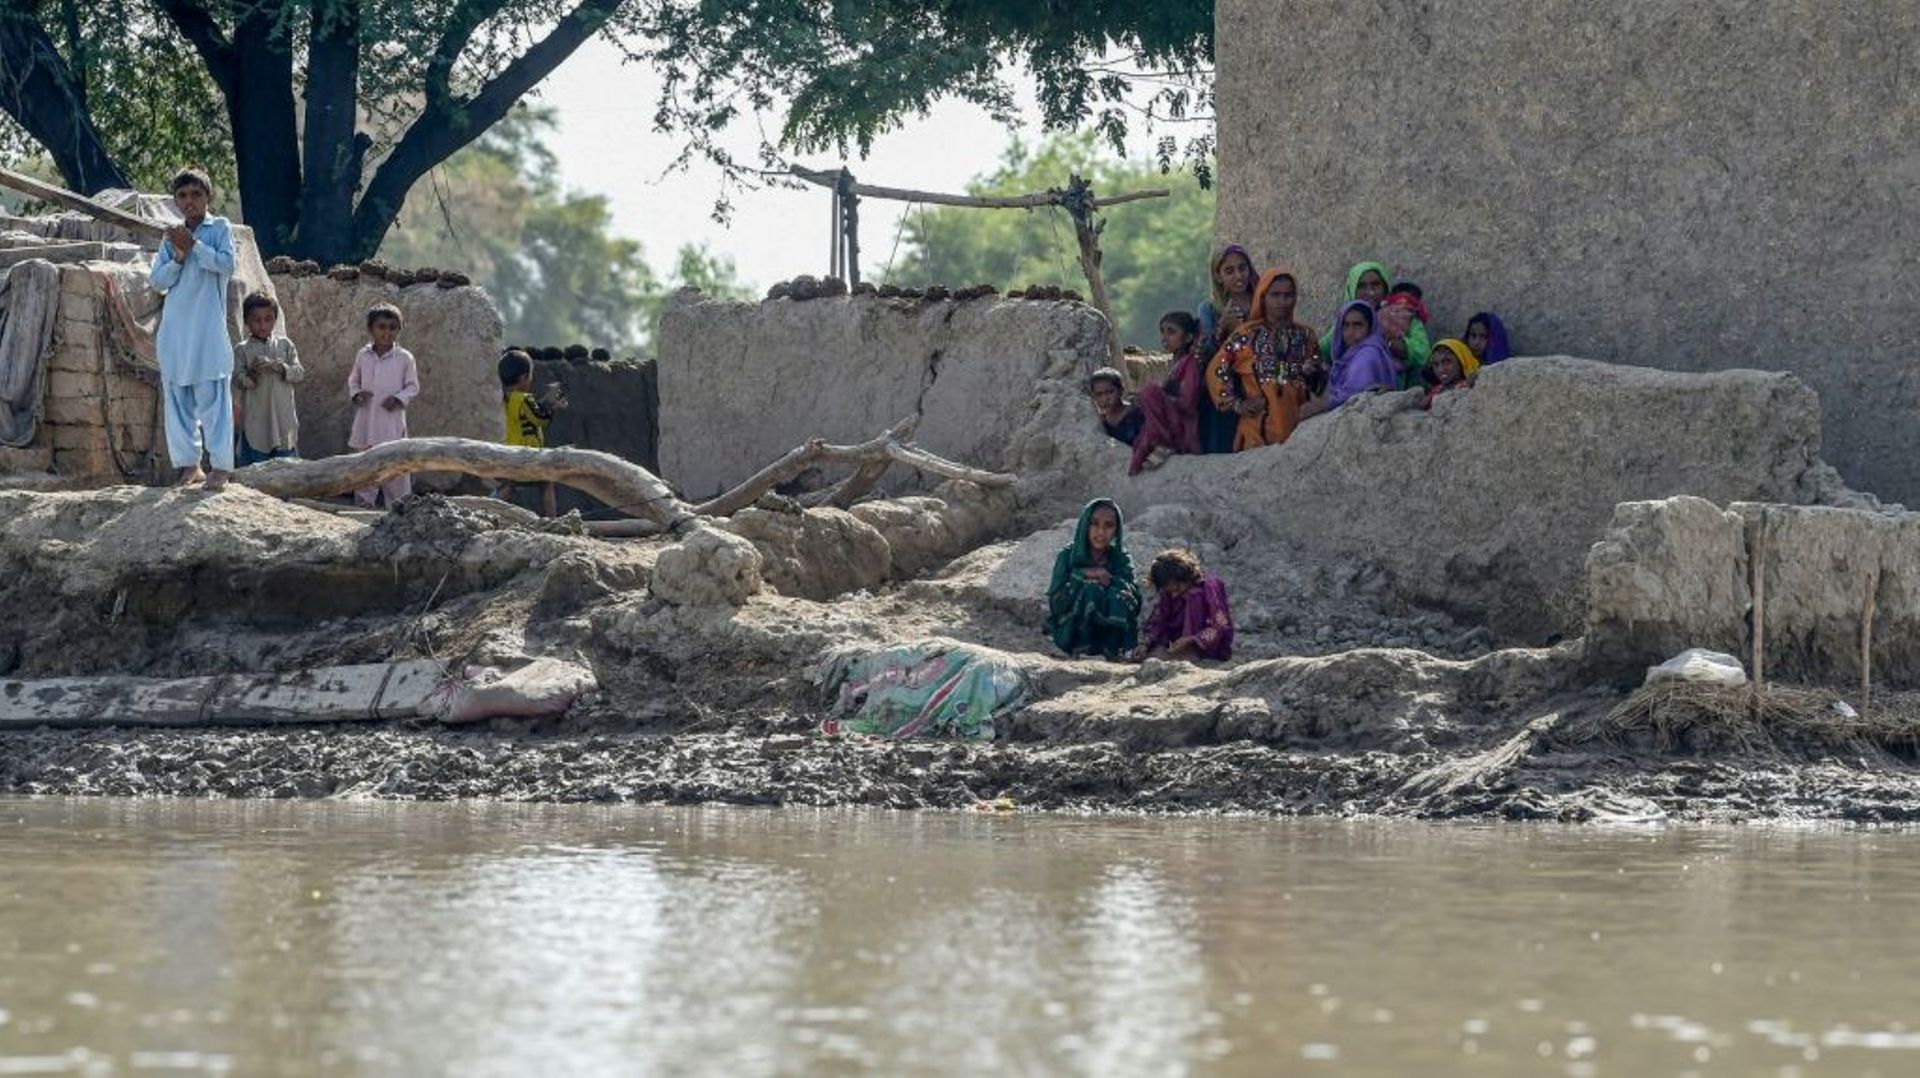 Des habitants touchés par les inondations attendent de l’aide dans le district de Rajanpur, dans la province du Pendjab, le 4 septembre 2022 au Pakistan